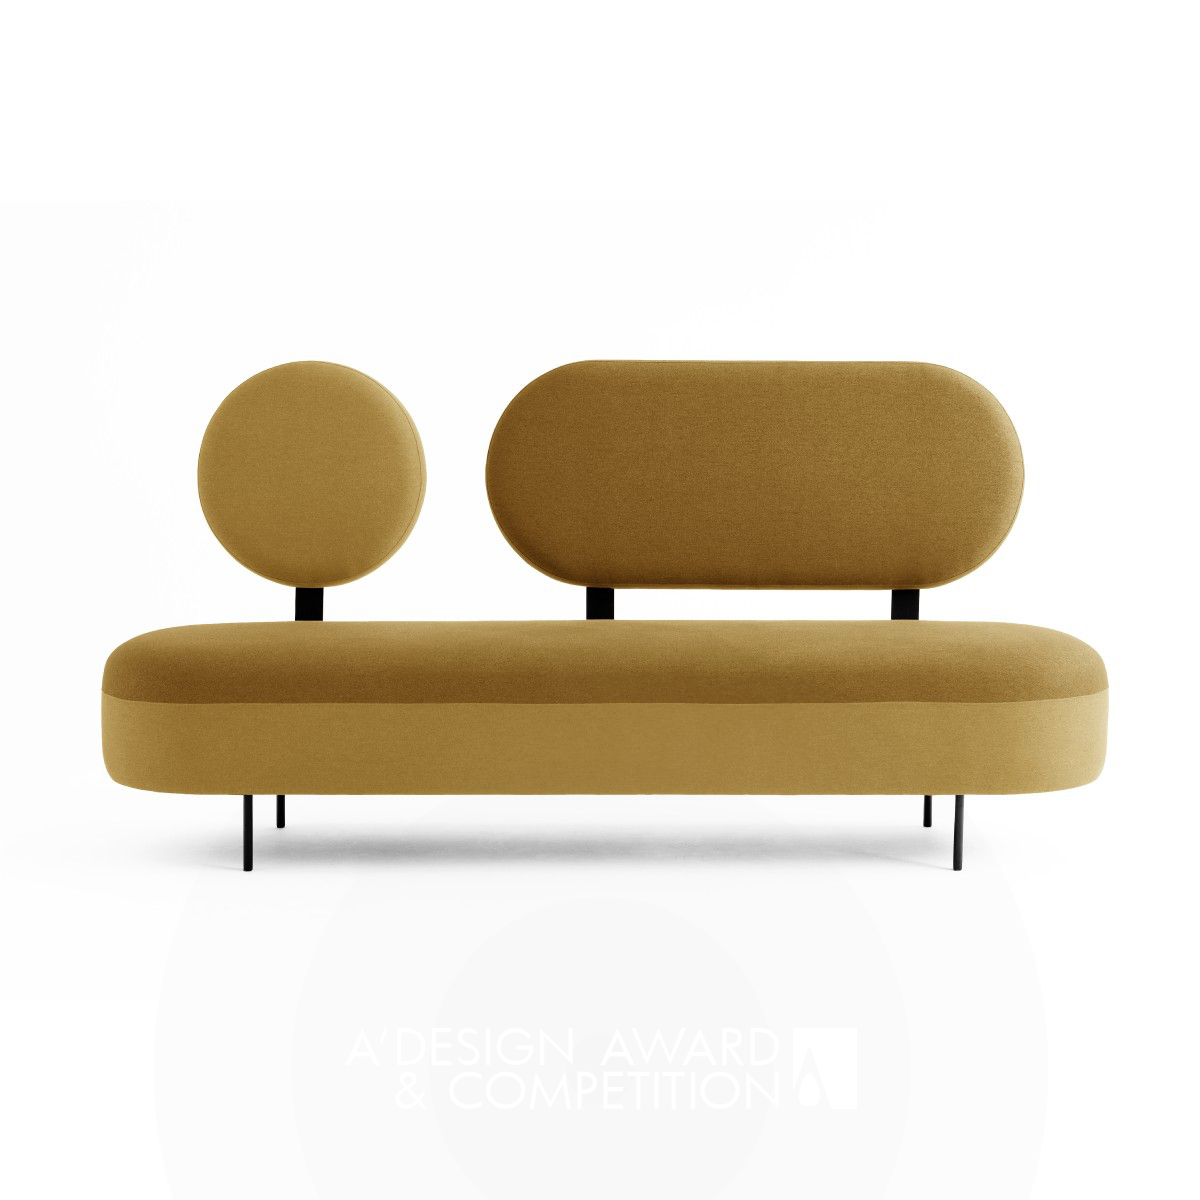 Bia Rezende wins Silver at the prestigious A' Furniture Design Award with Graphic Sofa.